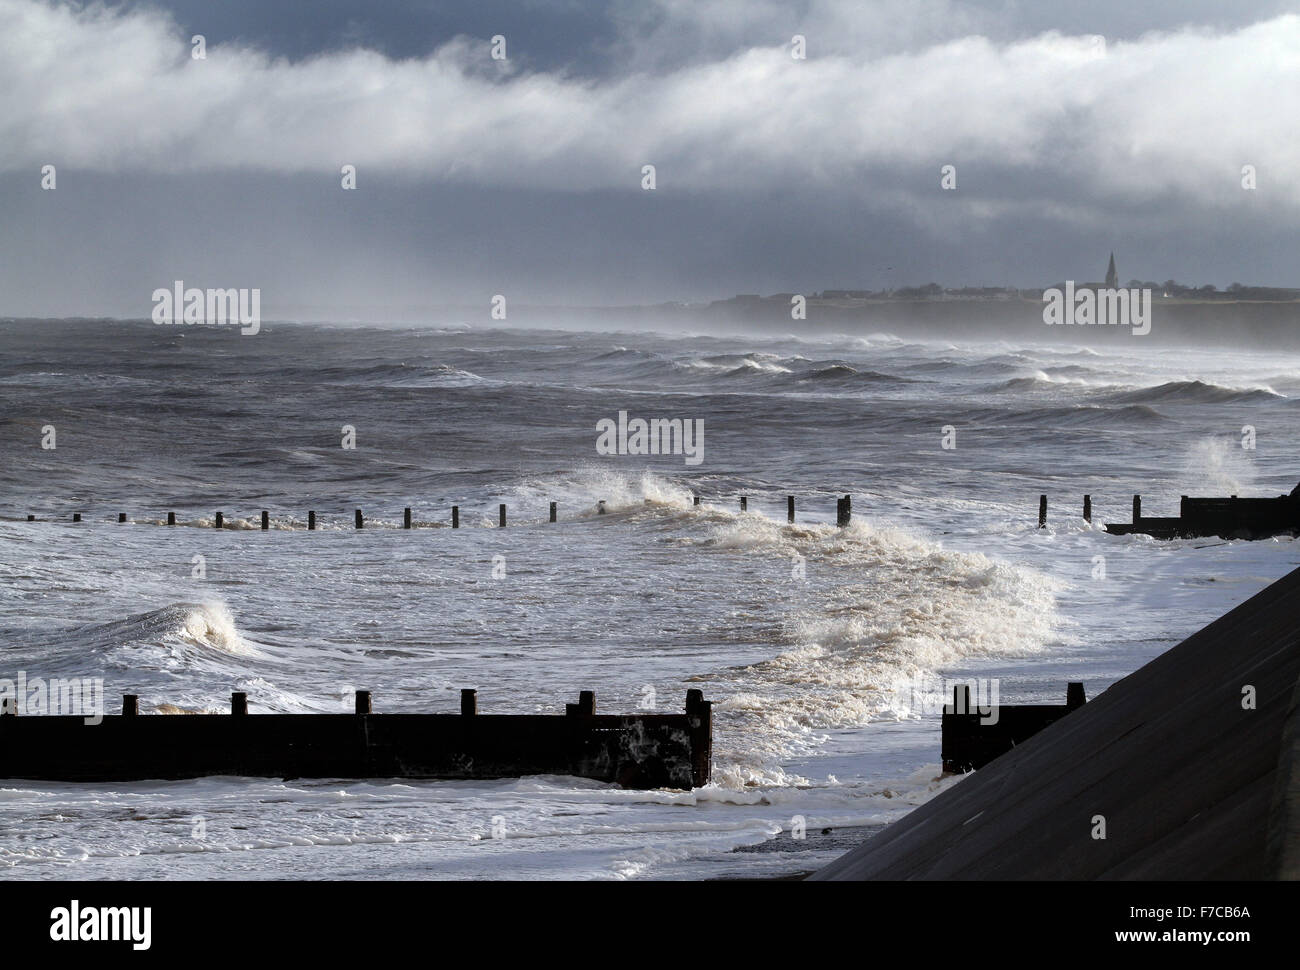 Mar agitado con viento fuerte. Foto de stock